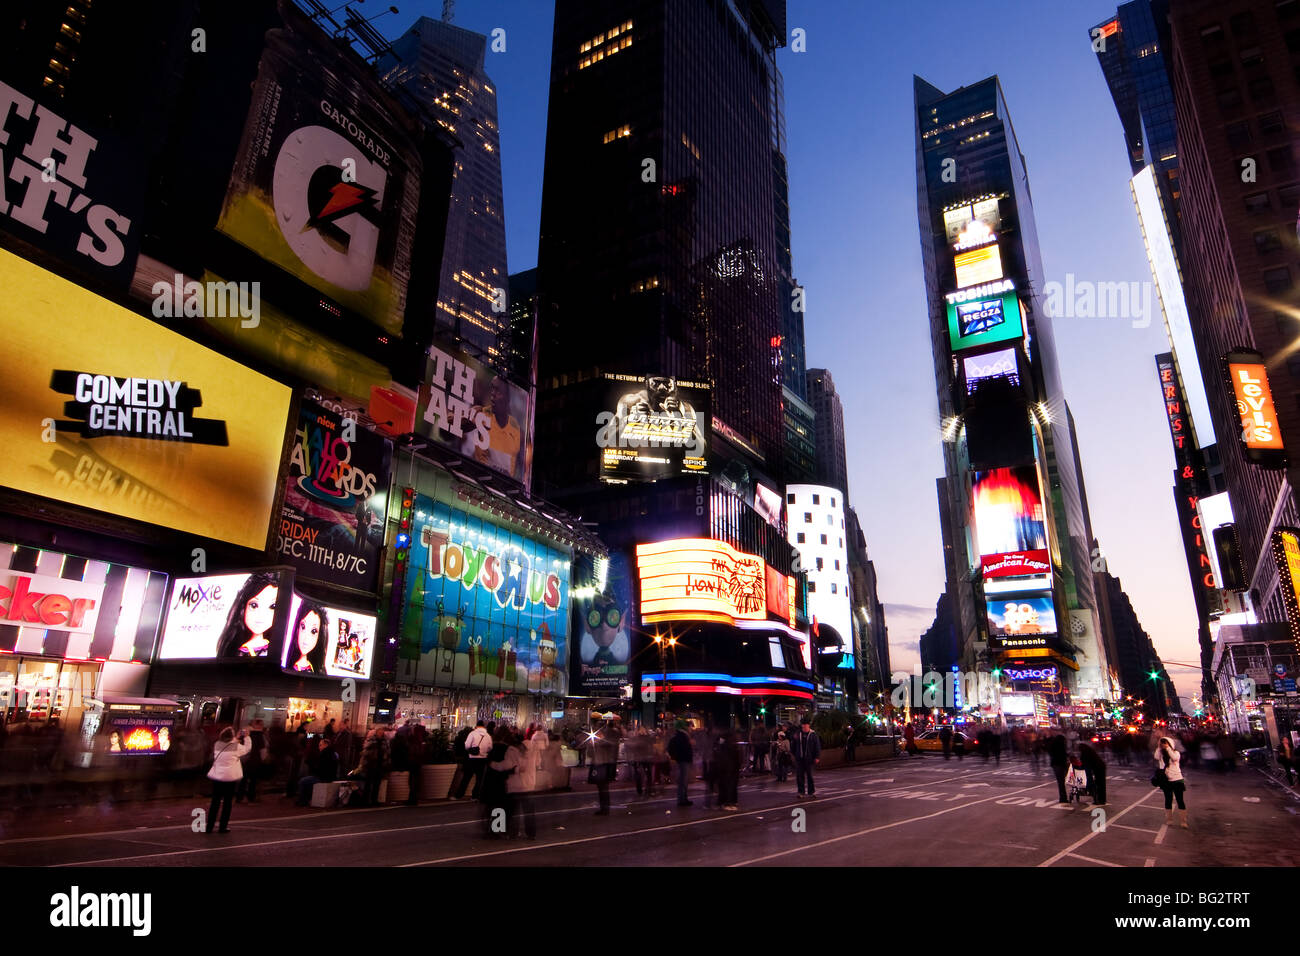 Scène de nuit de Times Square à Manhattan (New York City) avec tous les allume les panneaux et publicités, et de nombreux touristes. Banque D'Images